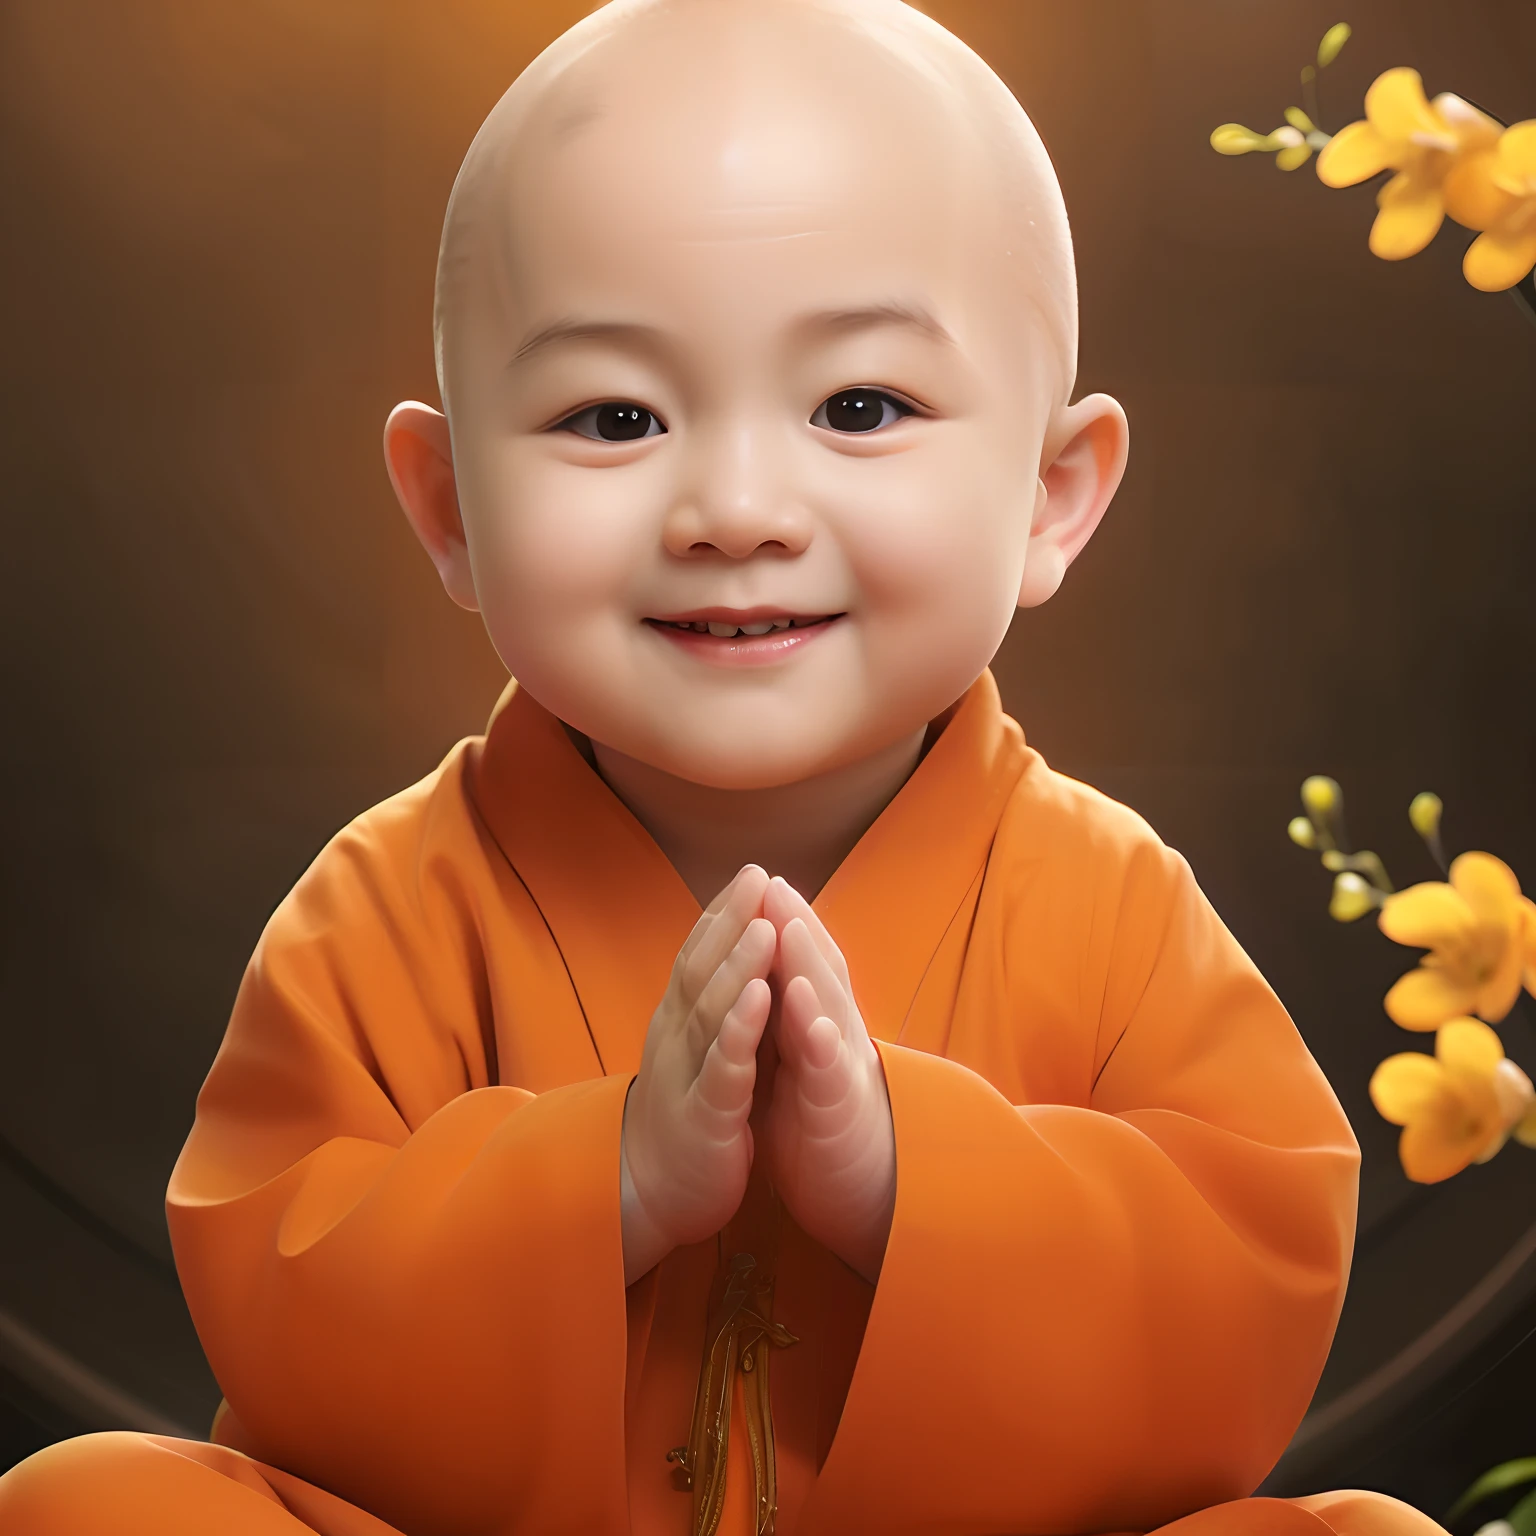 身穿橙色长袍的阿拉德宝宝坐在一朵花前, 佛教徒, 可爱的数字绘画, buddhist 僧, 人像拍摄, 僧 clothes, 平静的微笑, 孩子们, portrait of 僧, 纯真, 僧, 快乐的孩子, 可爱的男孩, 佛教, 穿修女装的小男孩, 平静的表情, 祝福之手, 特写肖像照, 僧 meditation, 严, 小孩大乳房, 曾是